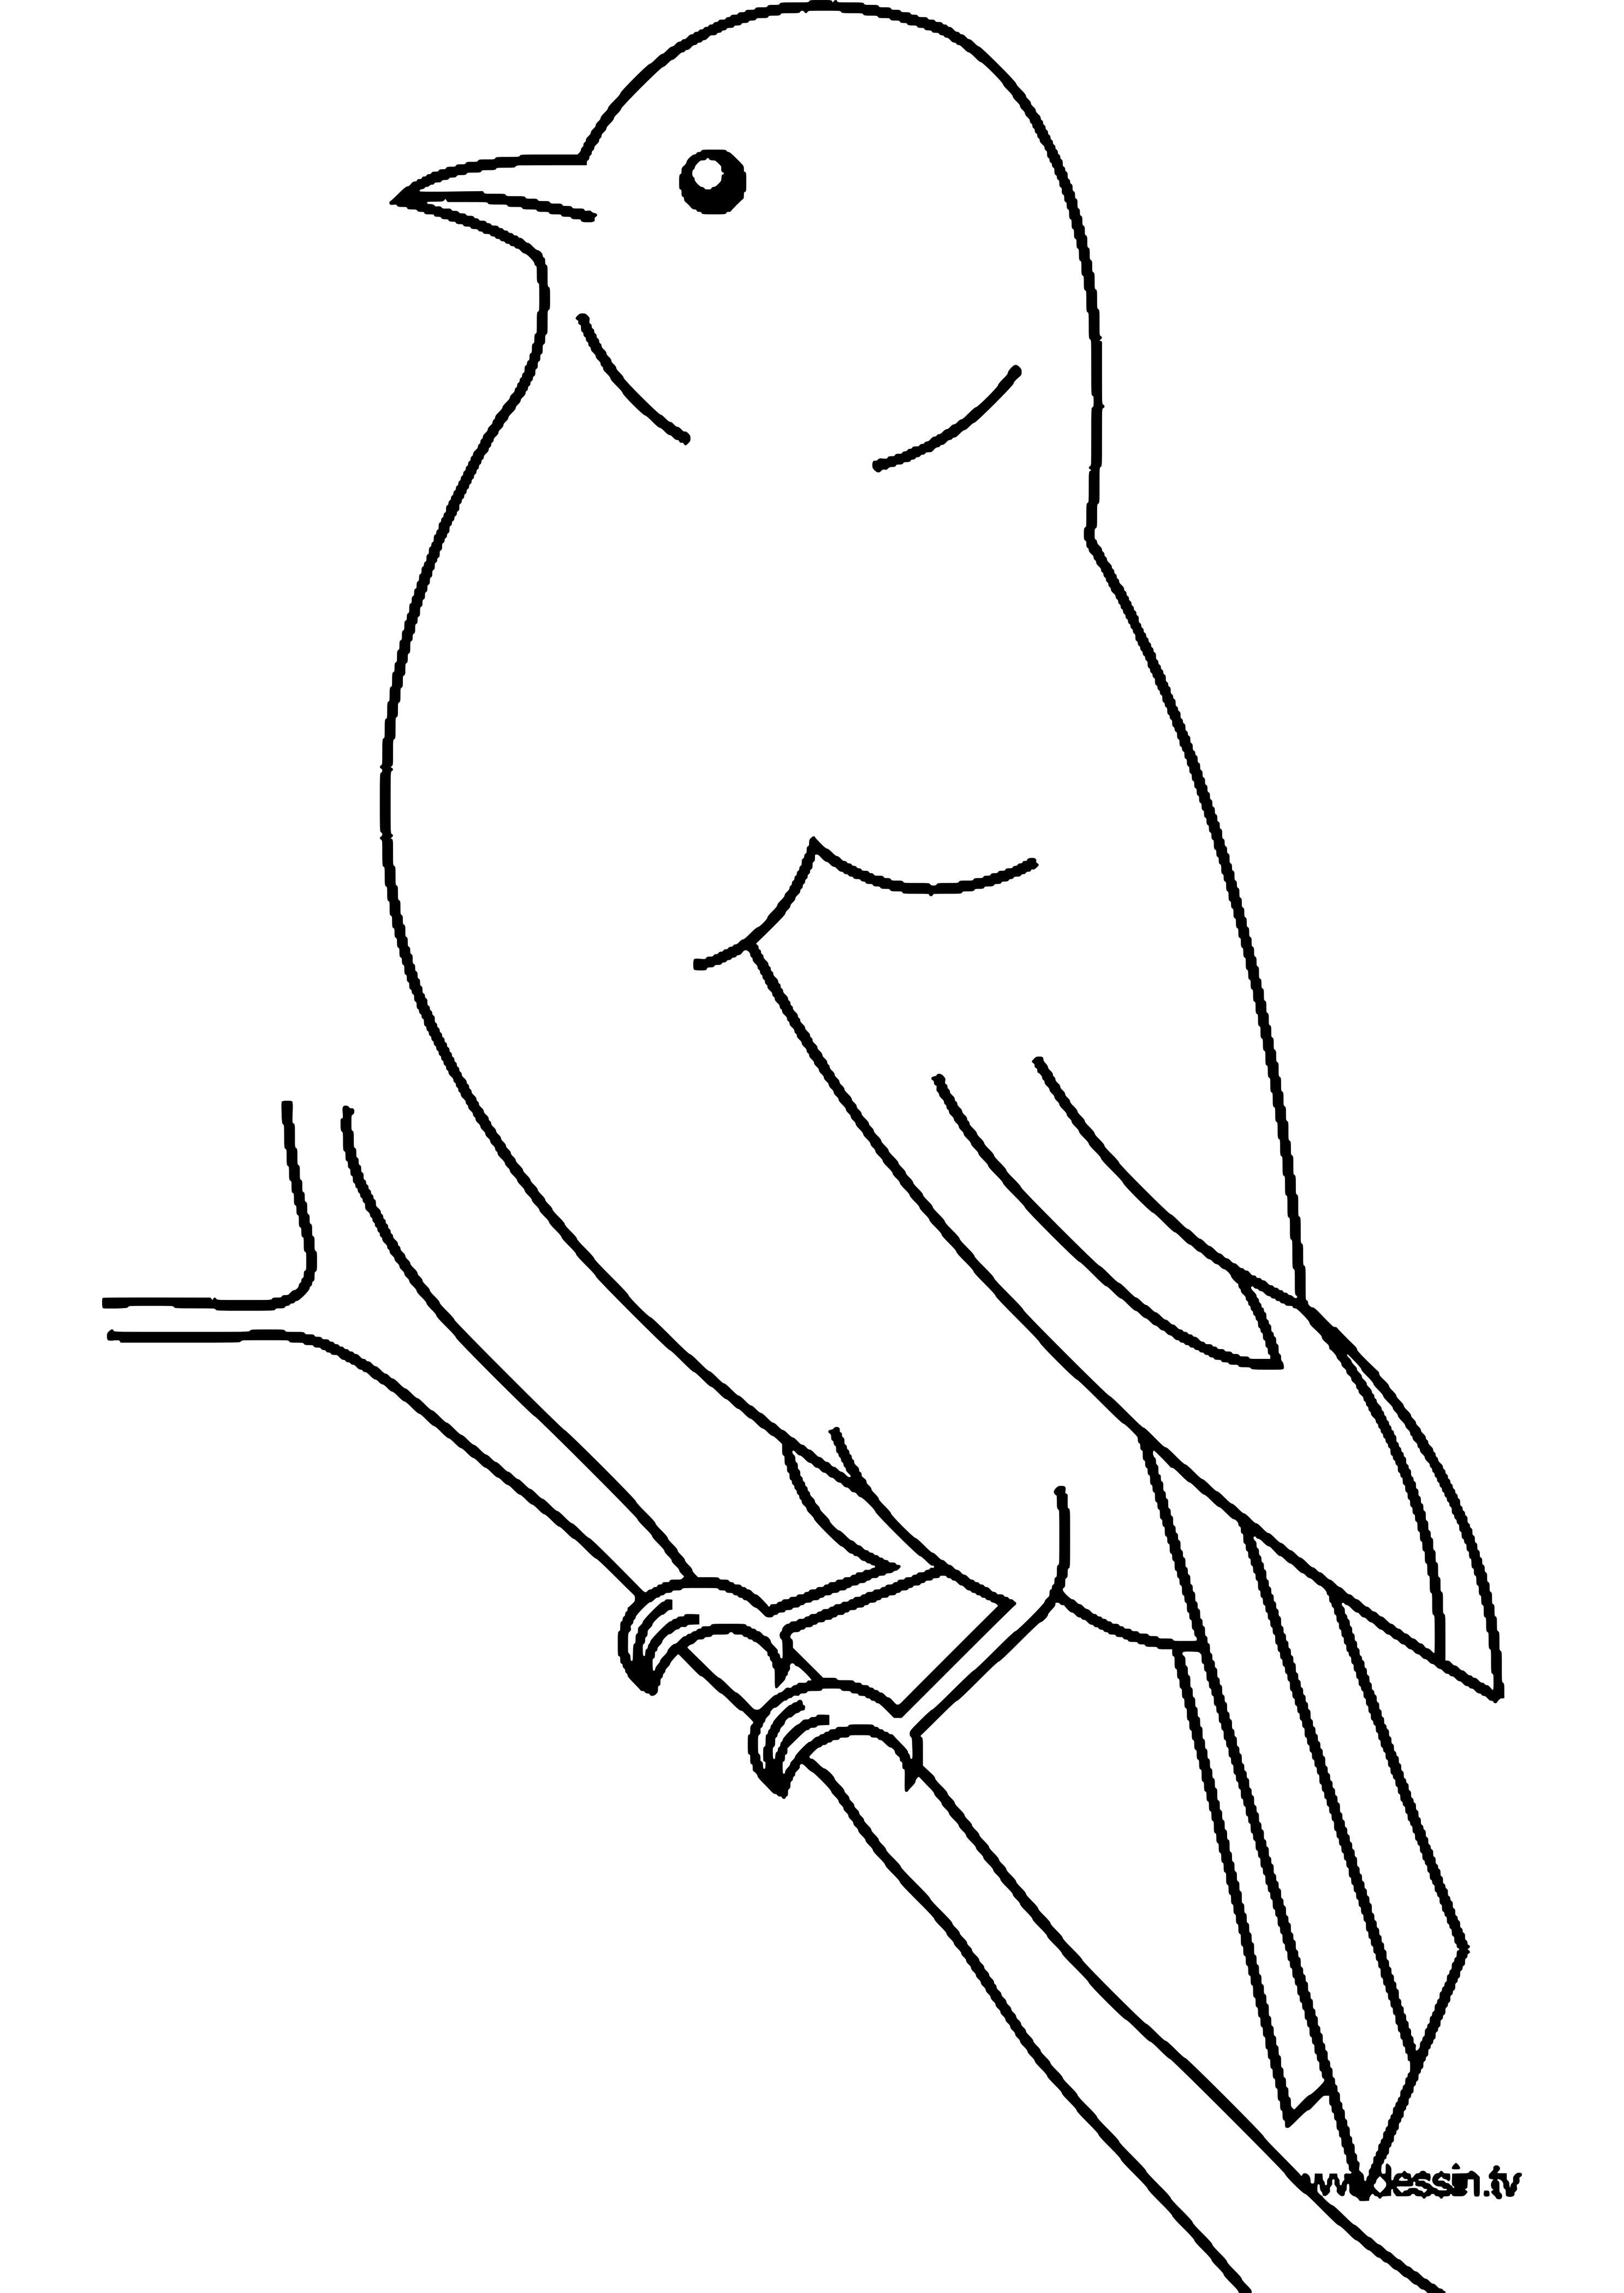 Трафарет птицы для рисования детям